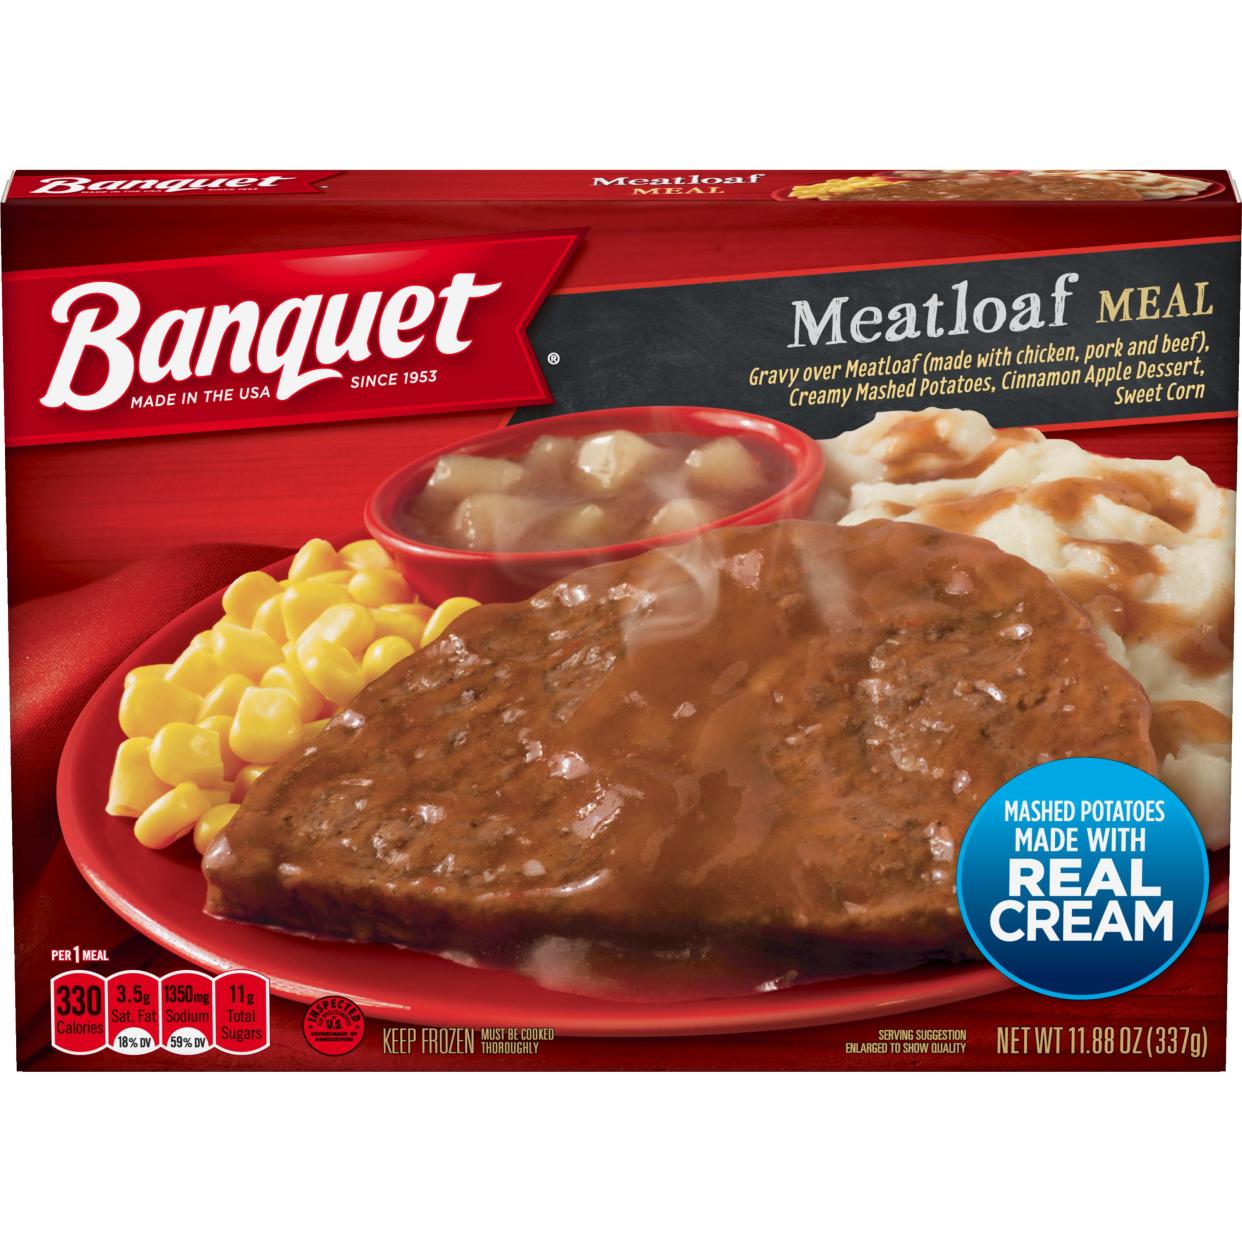 Banquet Meatloaf Meal